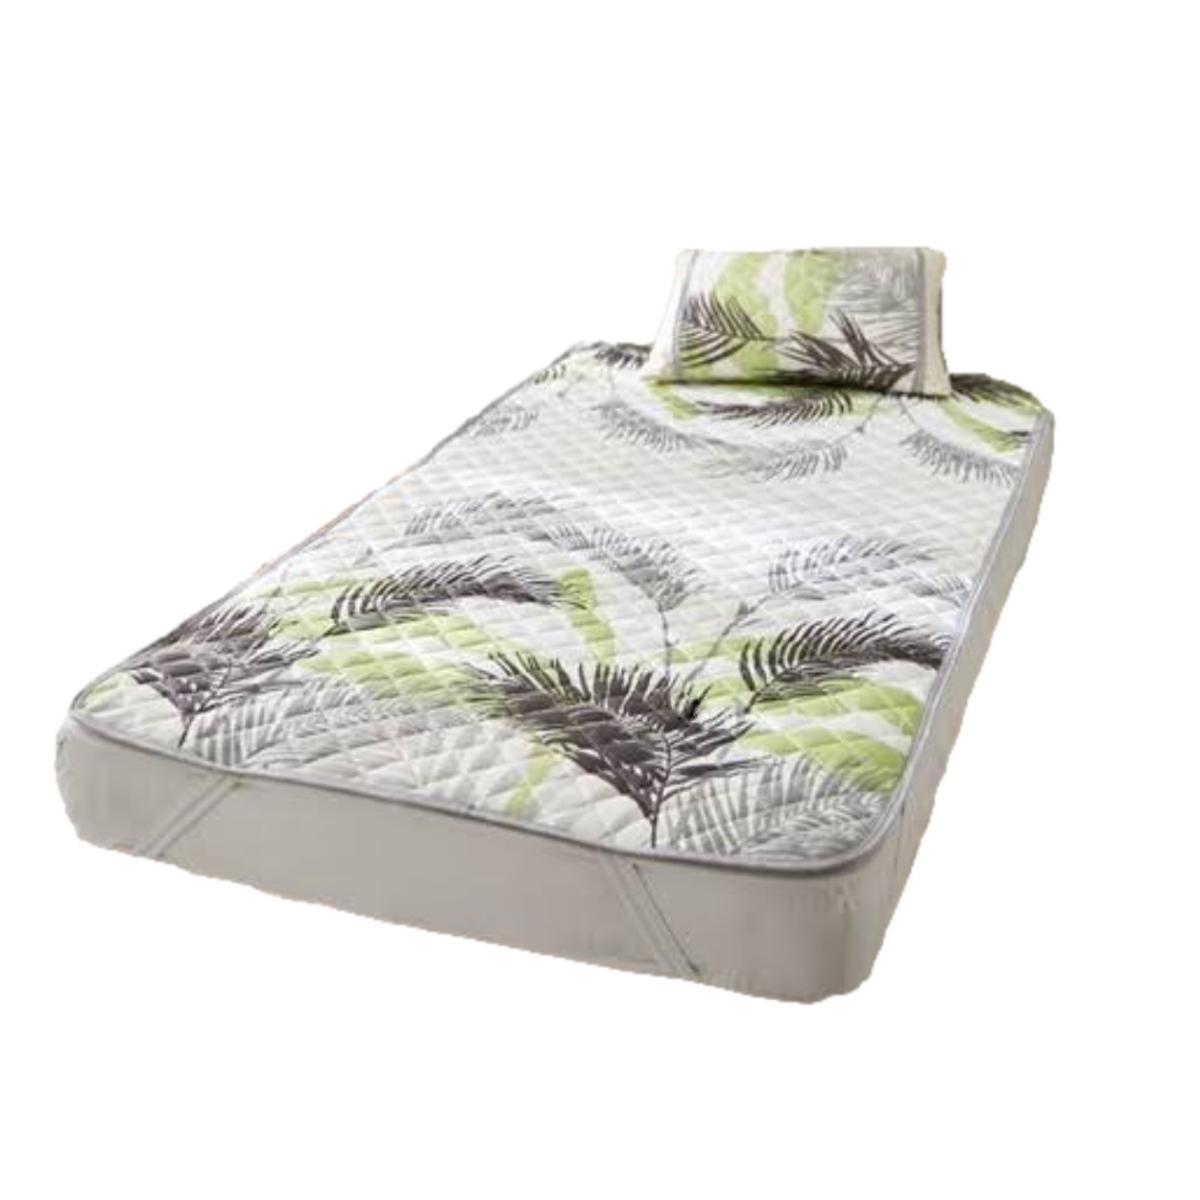 寝具 敷きパッド 接触冷感 リゾートリーフ柄 セミダブル 幅120x205cm グリーン系 夏の画像2